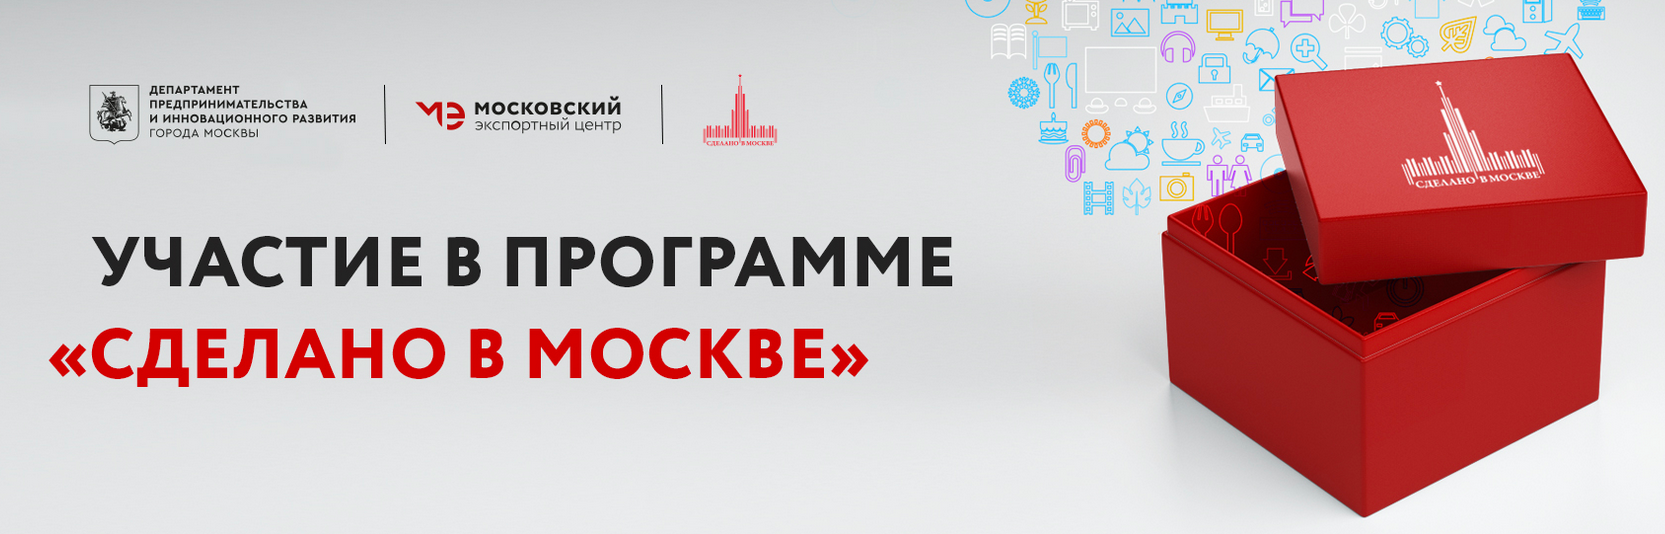 Открыт прием заявок на участие в выставках по программе «Сделано в Москве» 